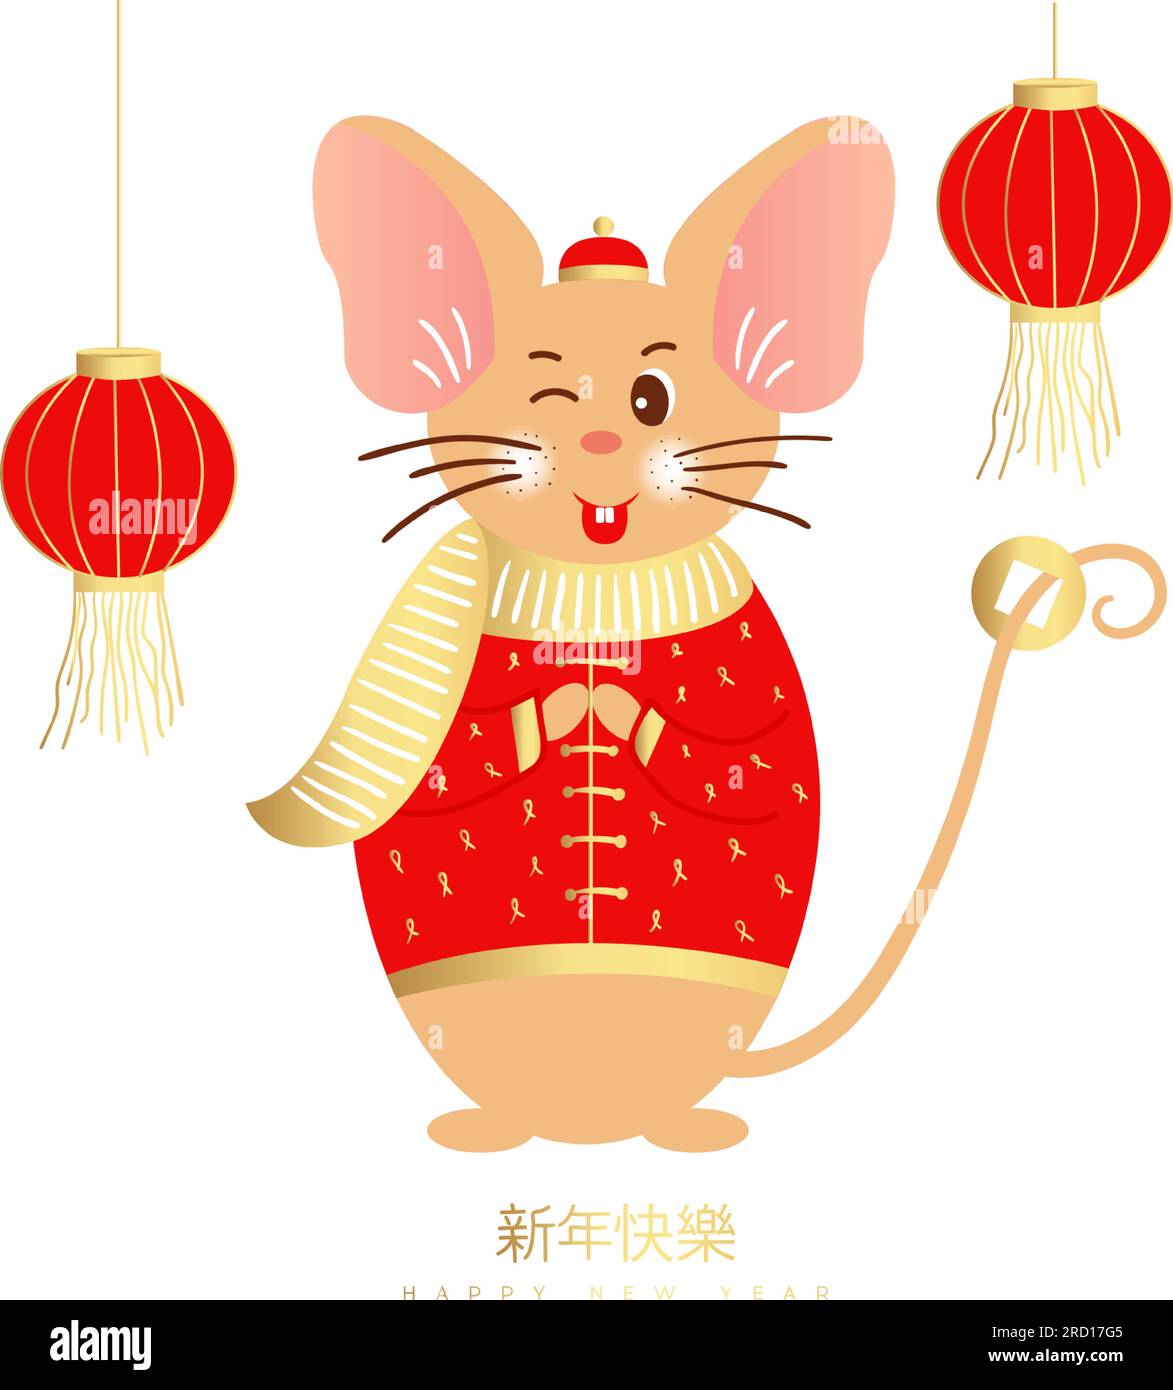 Vetores de Jogo De Selos Chineses Do Tag Com Rato No Fundo De Papel  Ilustração Do Vetor Tradução De Título Feliz Ano Novo Símbolo Em Selo  Vermelho Significa Zodiac Assinar Rat e